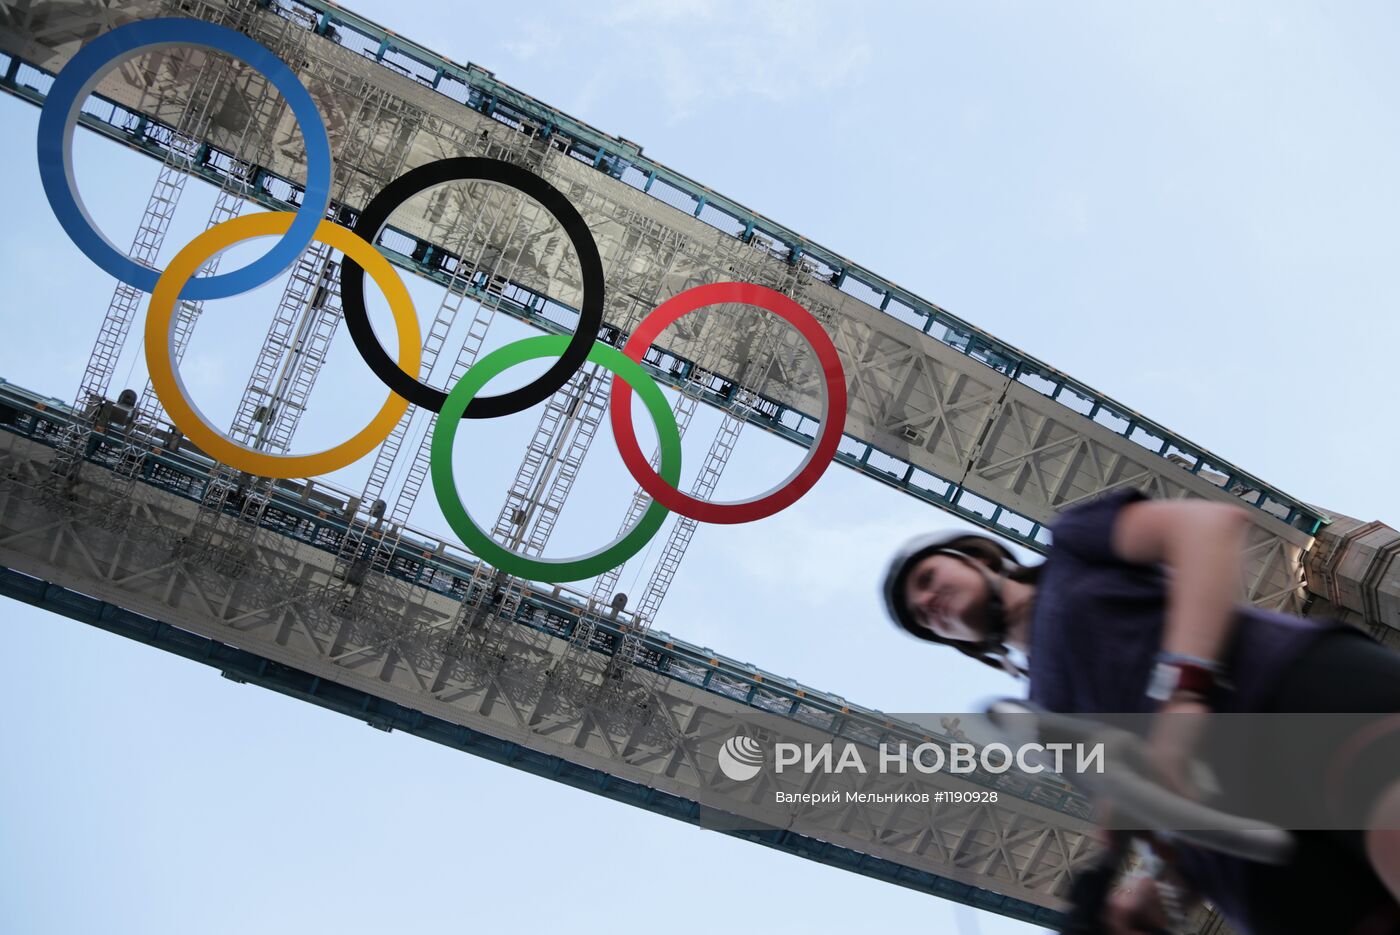 Лондон в преддверии Олимпийских игр - 2012